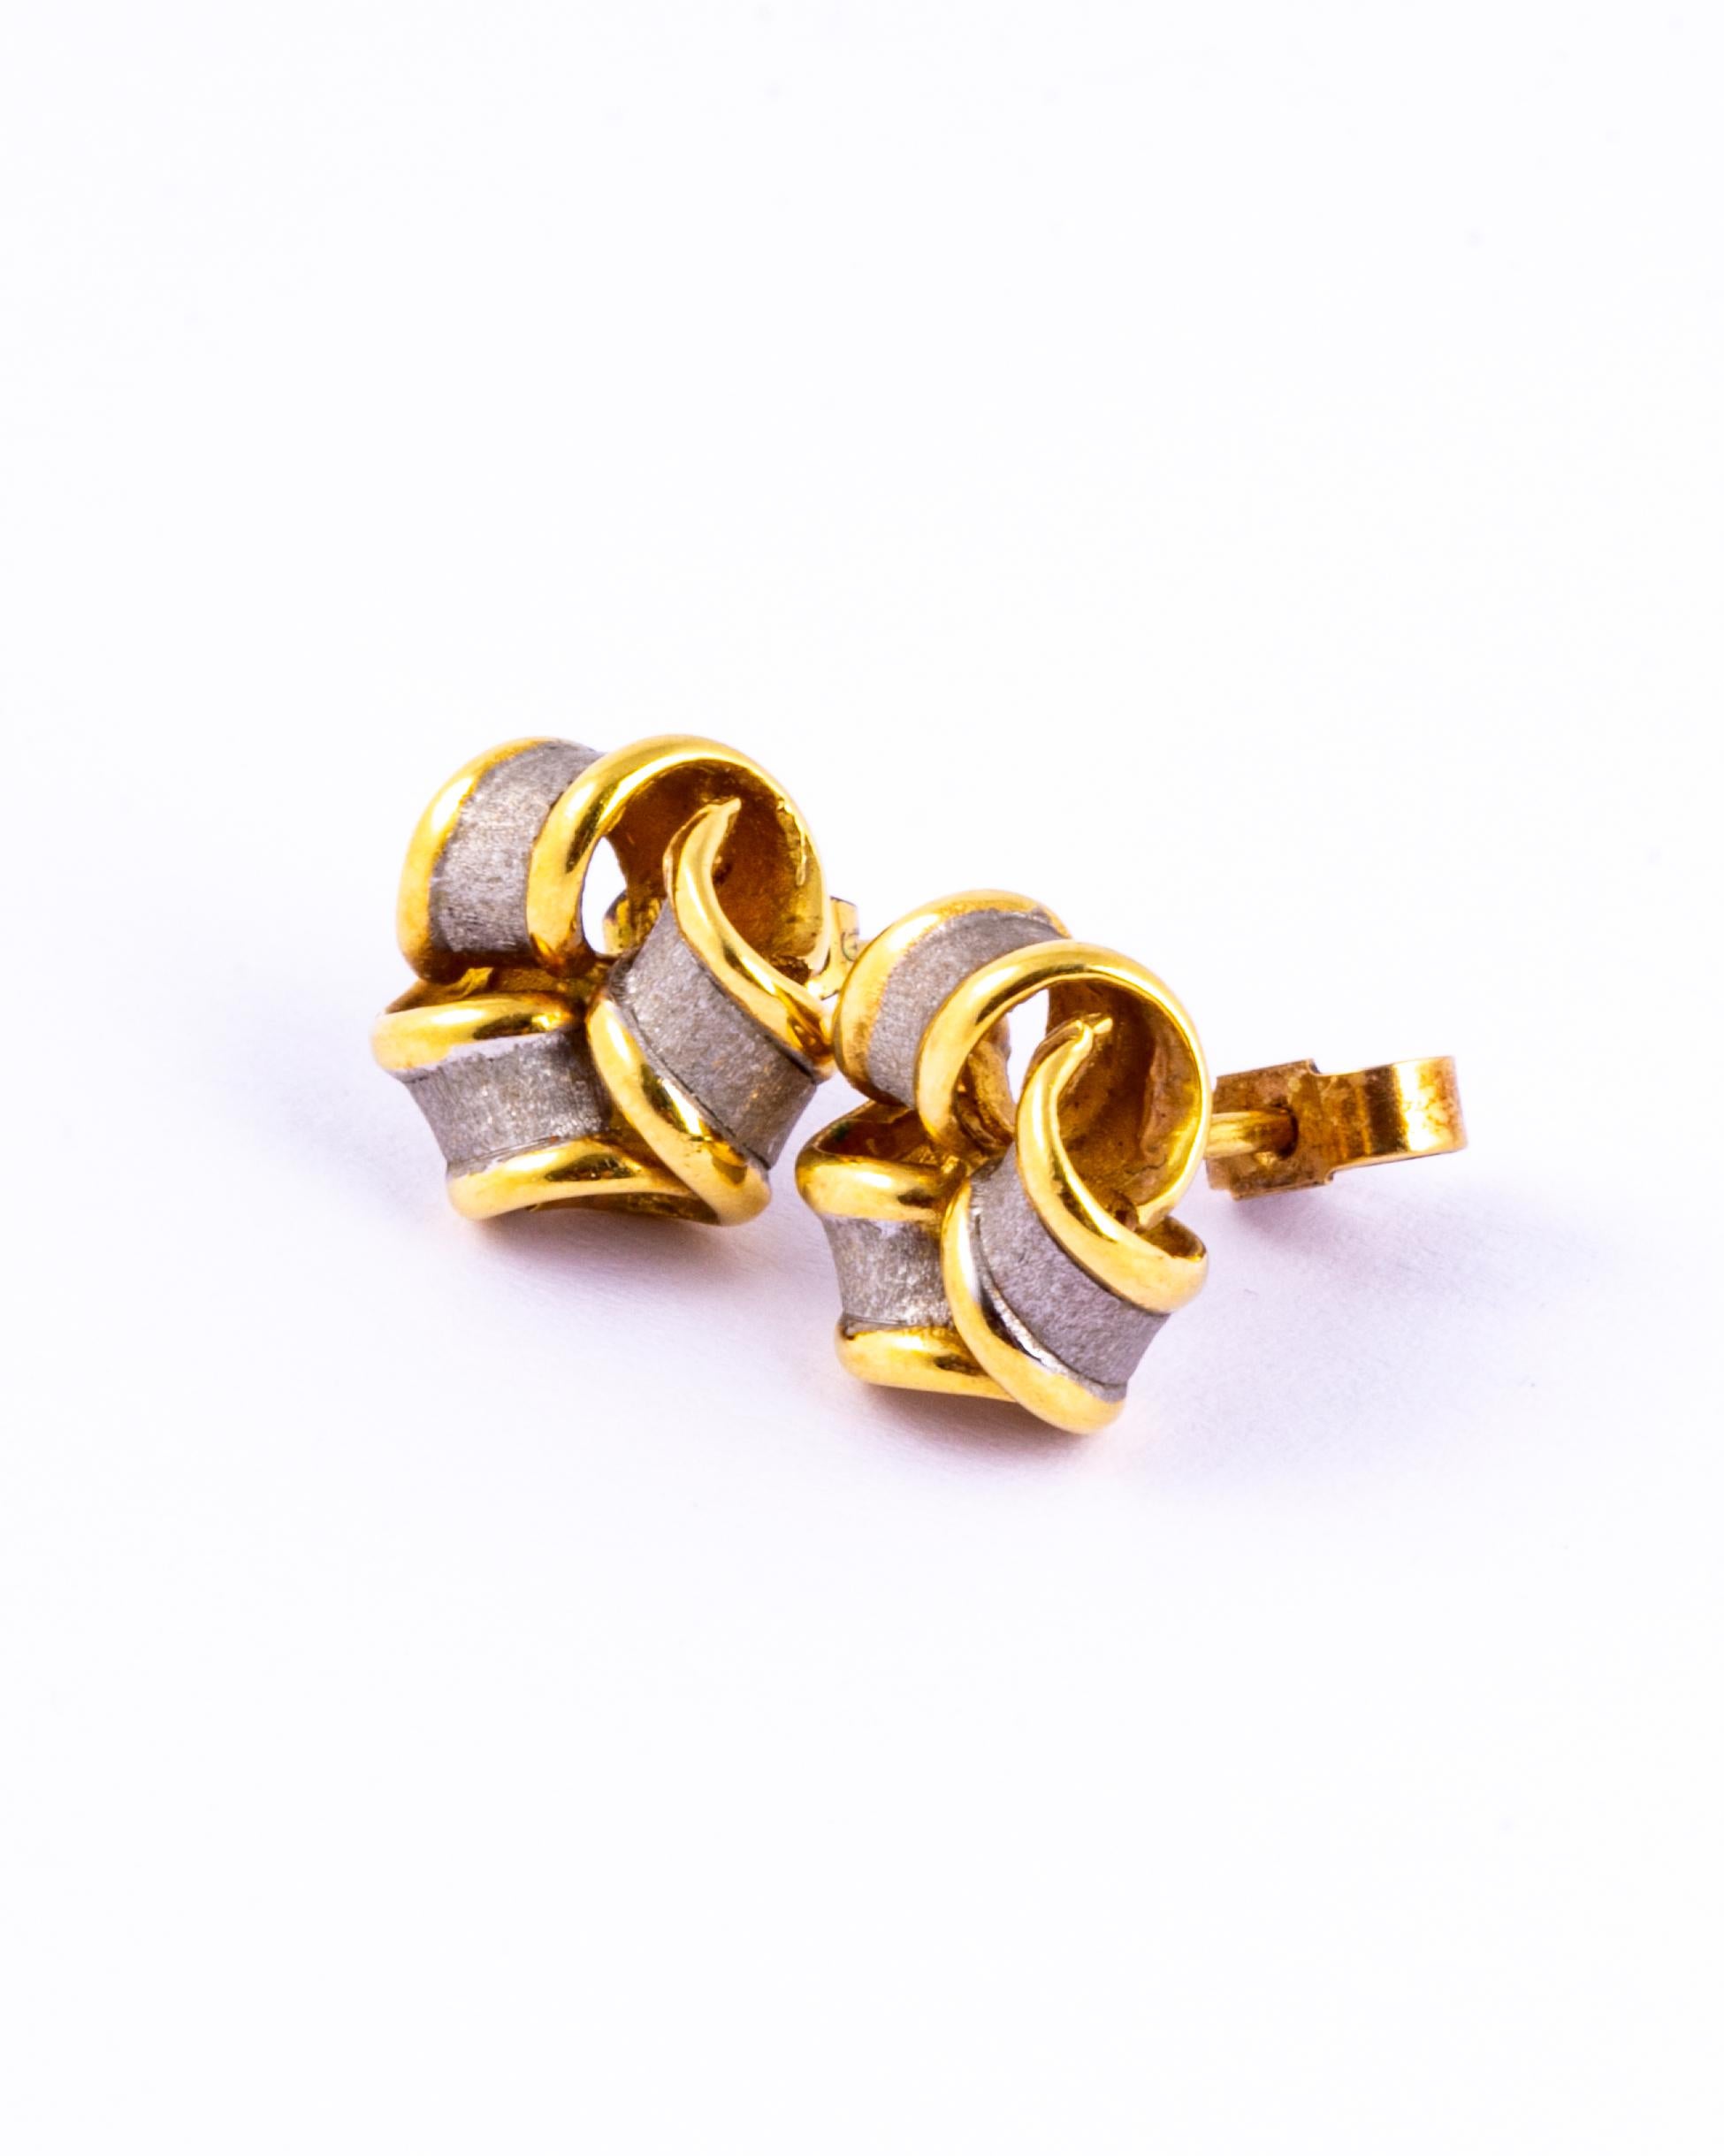 Diese detaillierten Knoten-Ohrstecker sind aus 18-karätigem Gold modelliert und mit einem strukturierten Weißgold-Overlay versehen. 

Knoten-Durchmesser: 11mm

Gewicht: 4,8